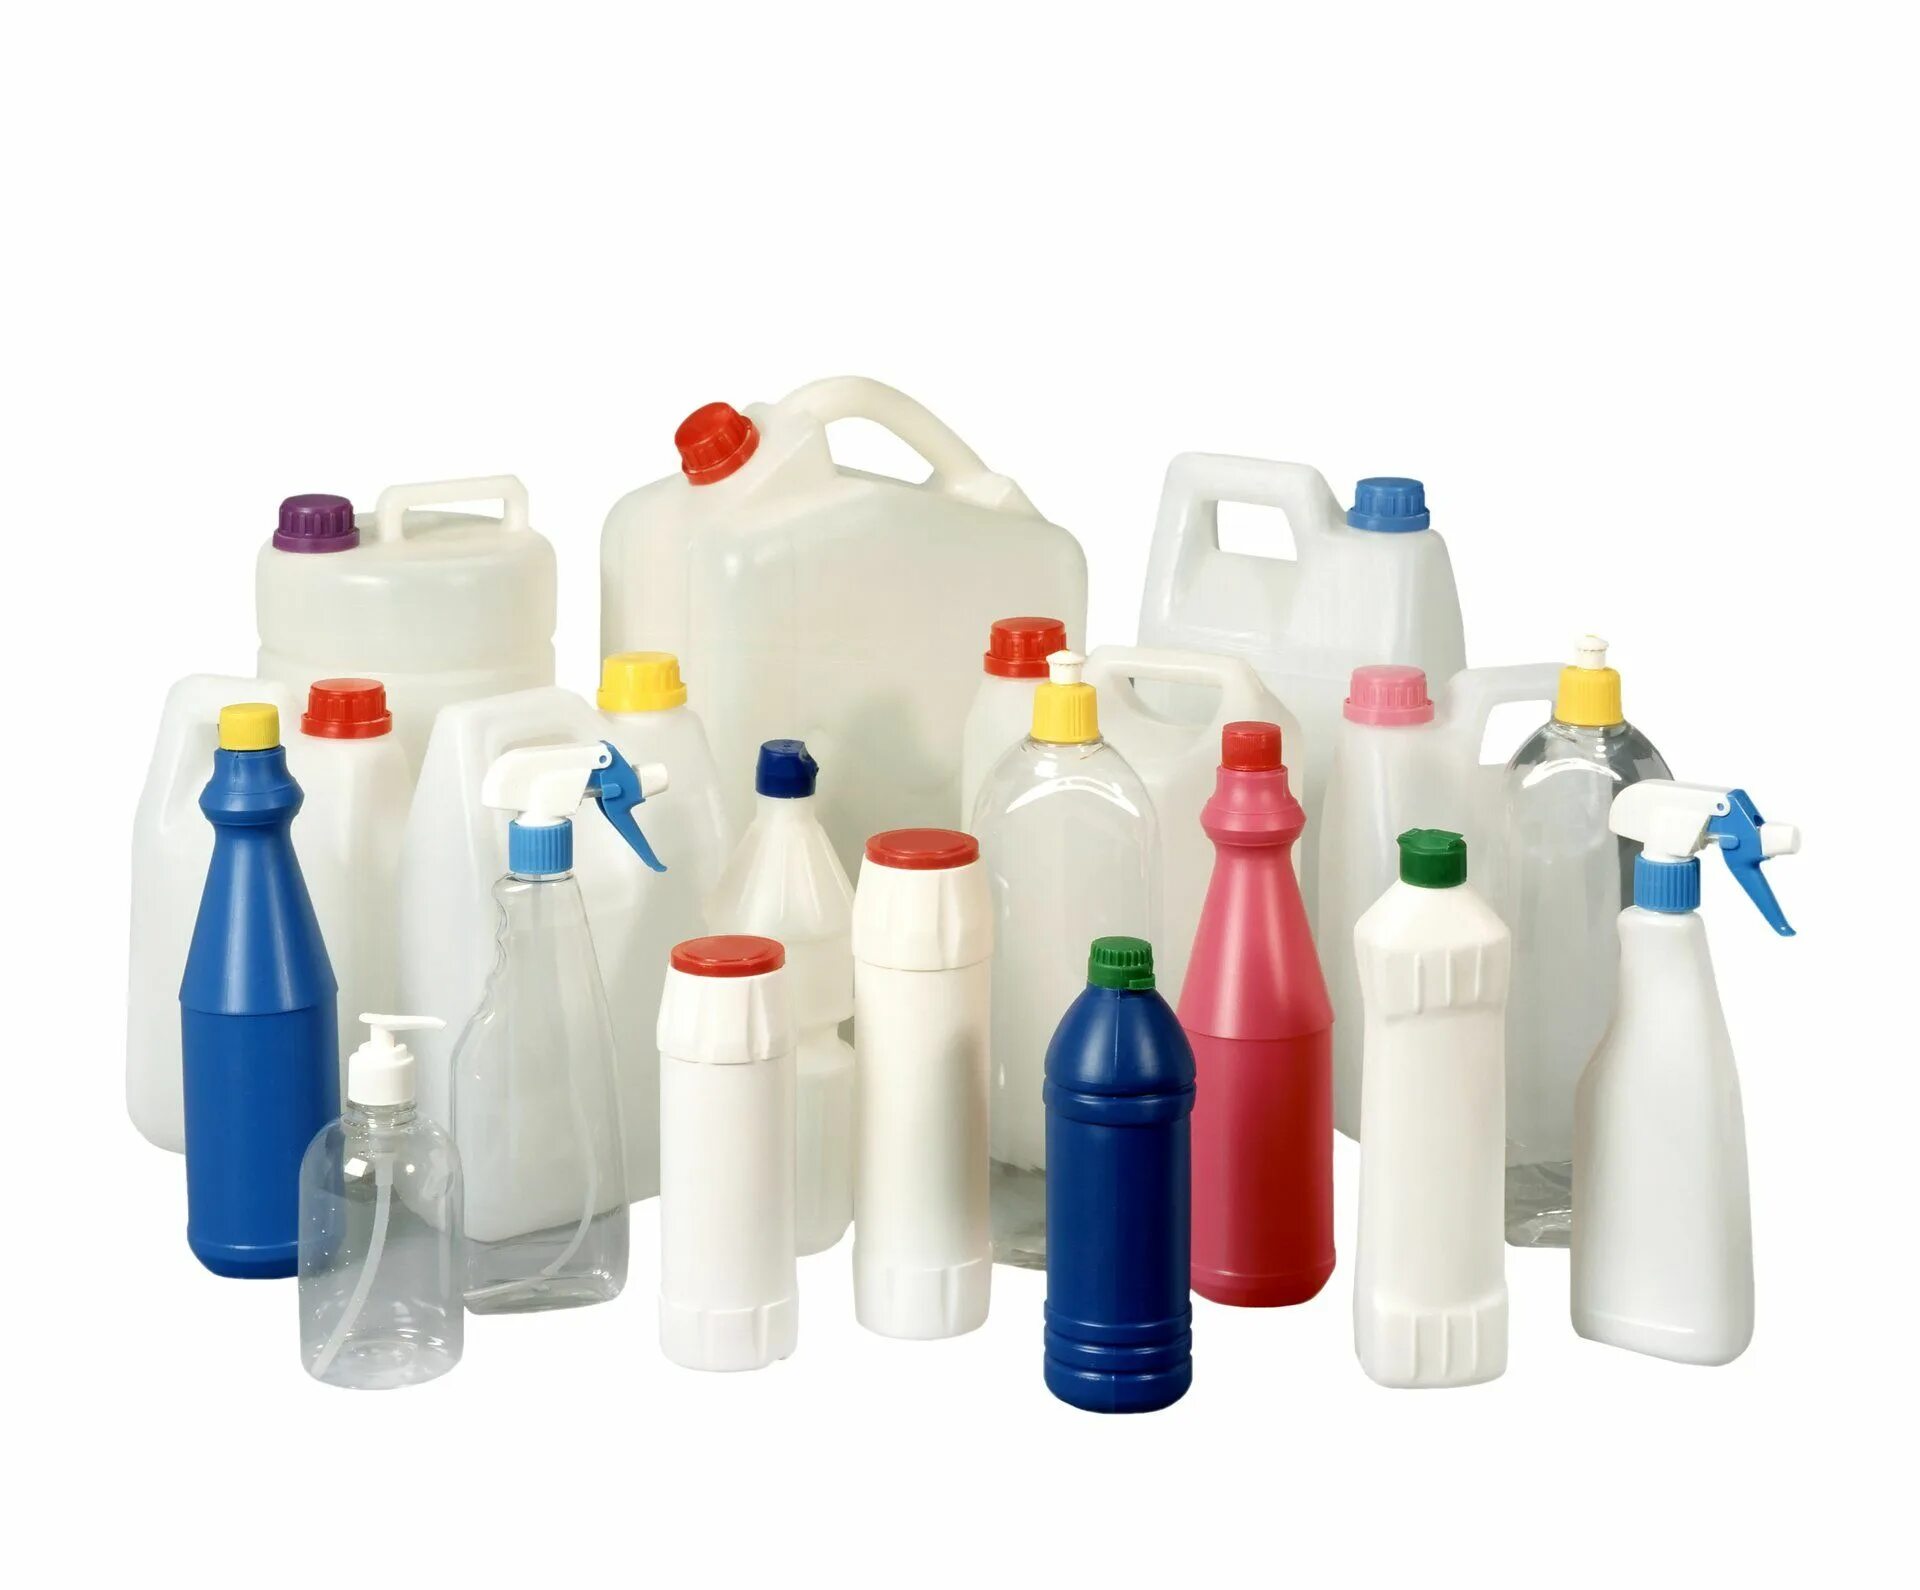 ПНД отходы 02 HDPE флаконы. HDPE «2» (флаконы до 2л). Флаконы для бытовой химии. Пластиковые бутылки для бытовой химии.